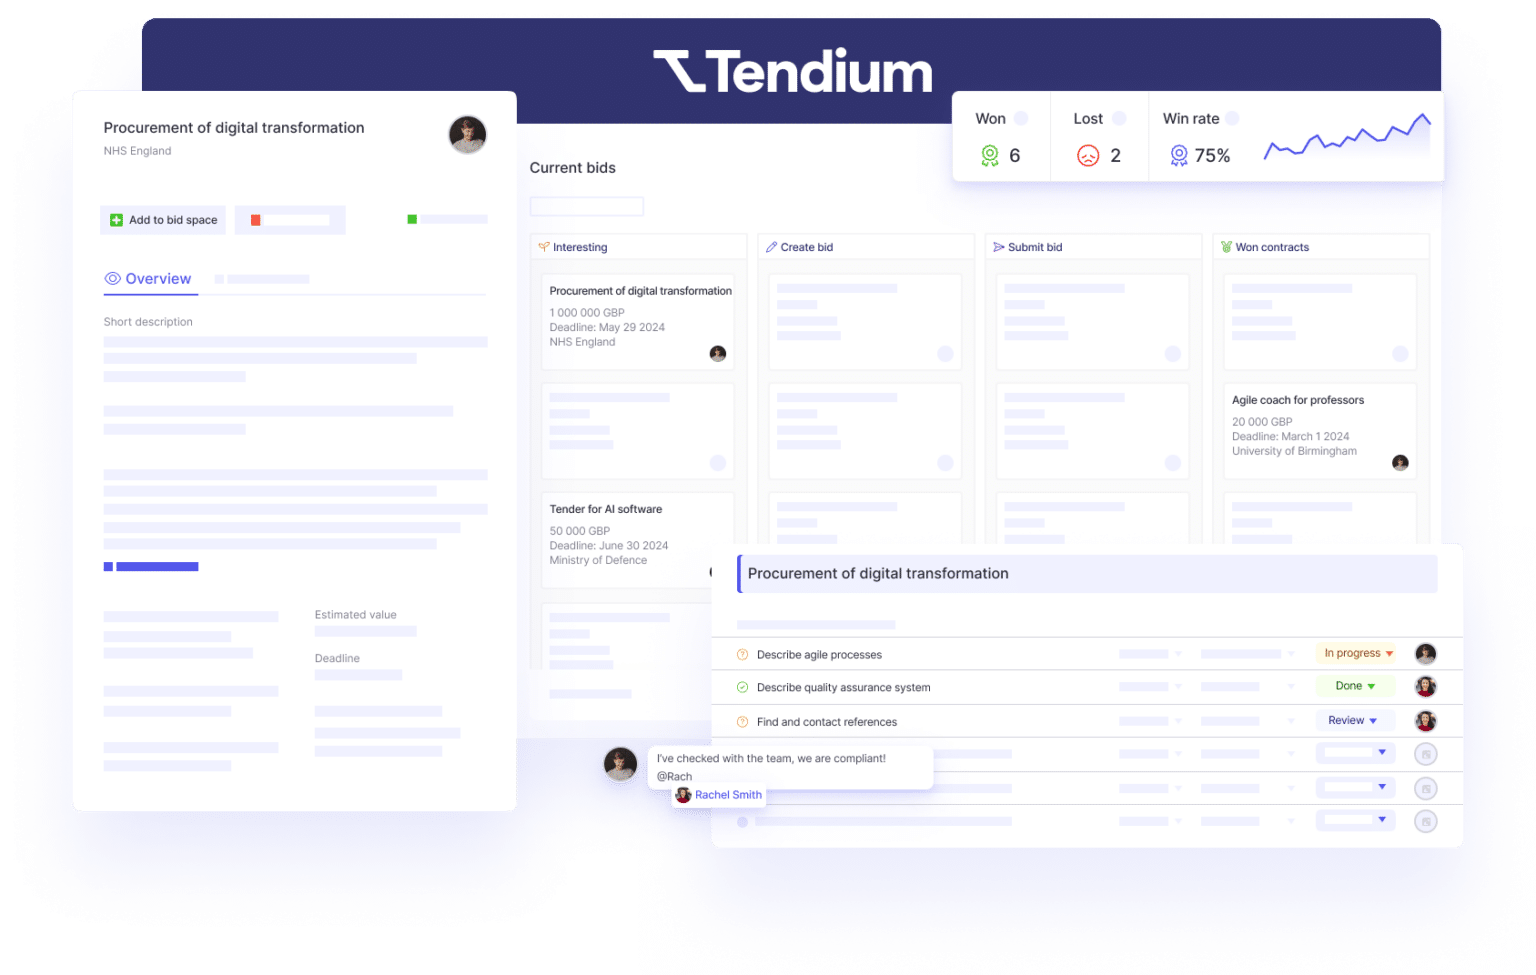 The Tendium platform